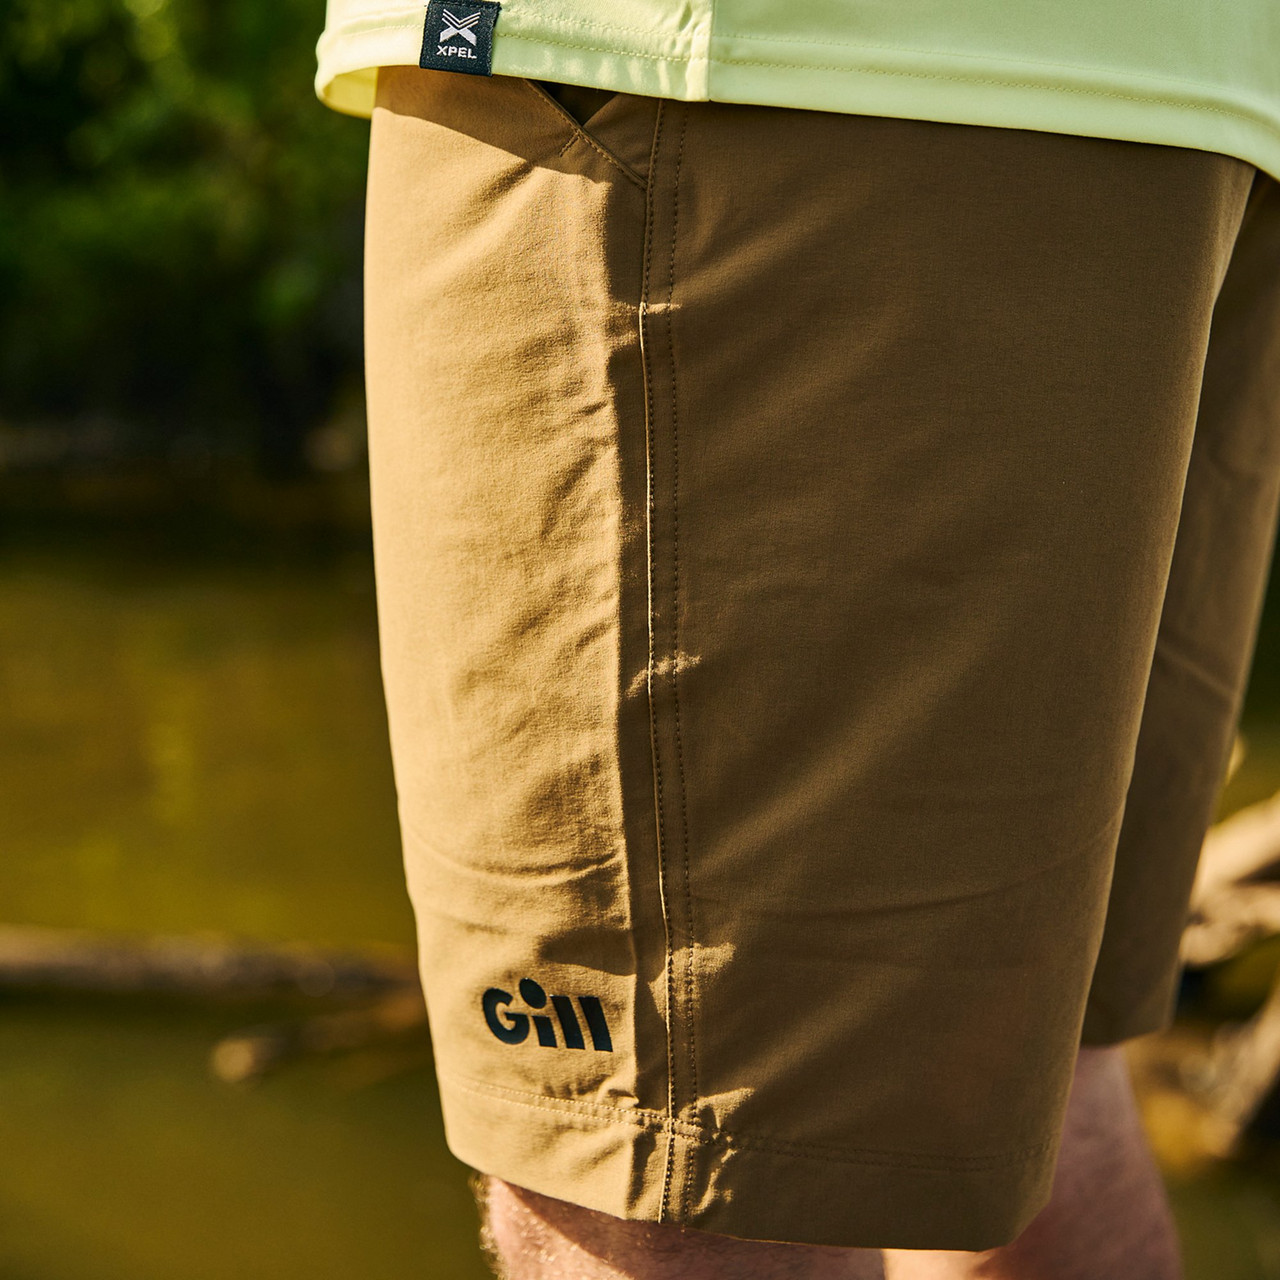 Shorts - Gill Fishing